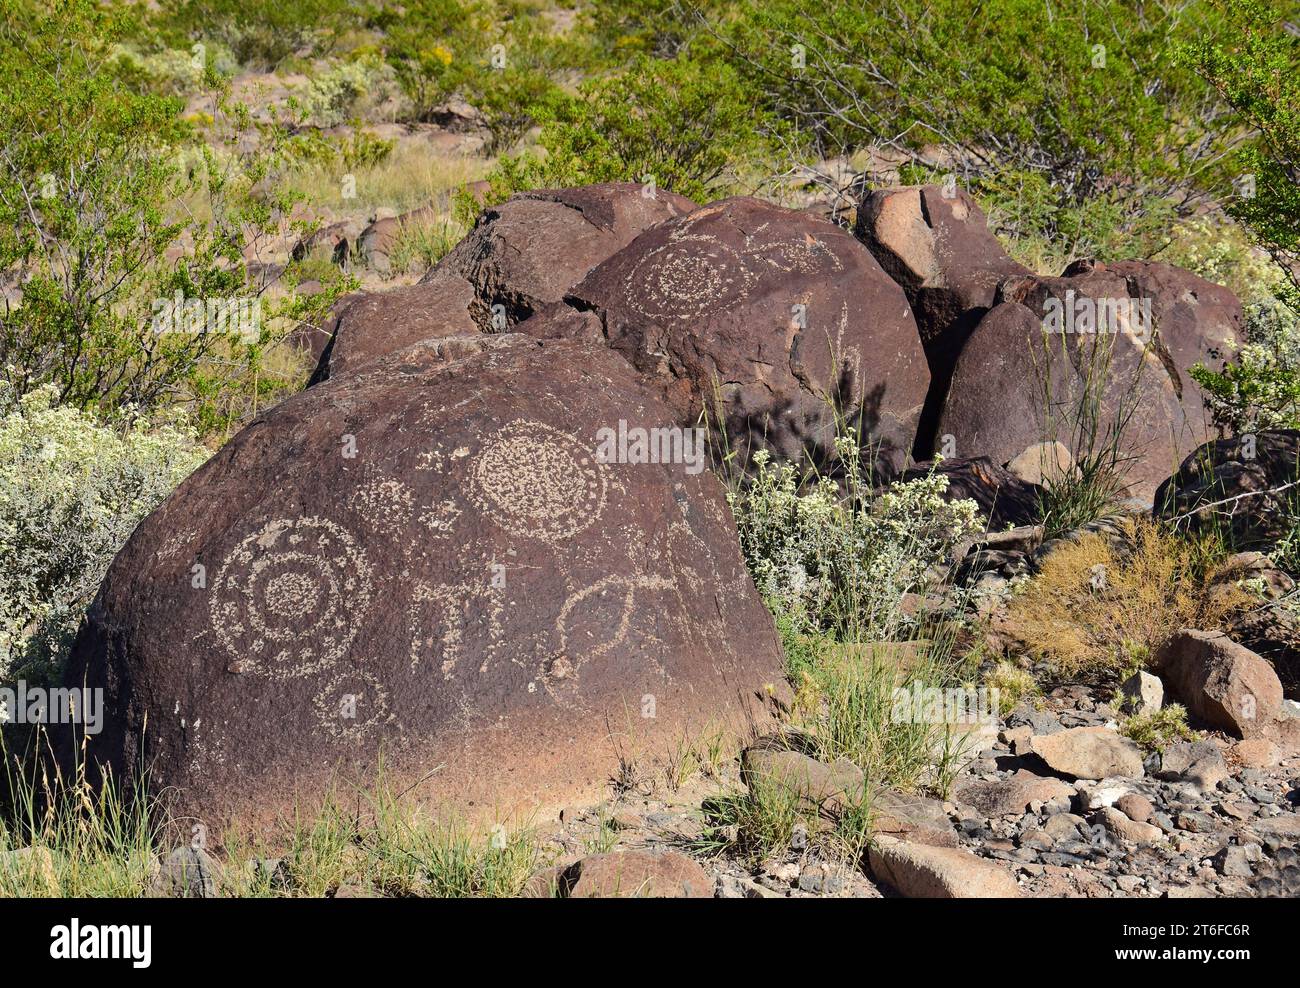 the ancient native jornada morgollon petroglyphs  on a sunny day at three rivers petroglyph site, near tularosa, new mexico Stock Photo